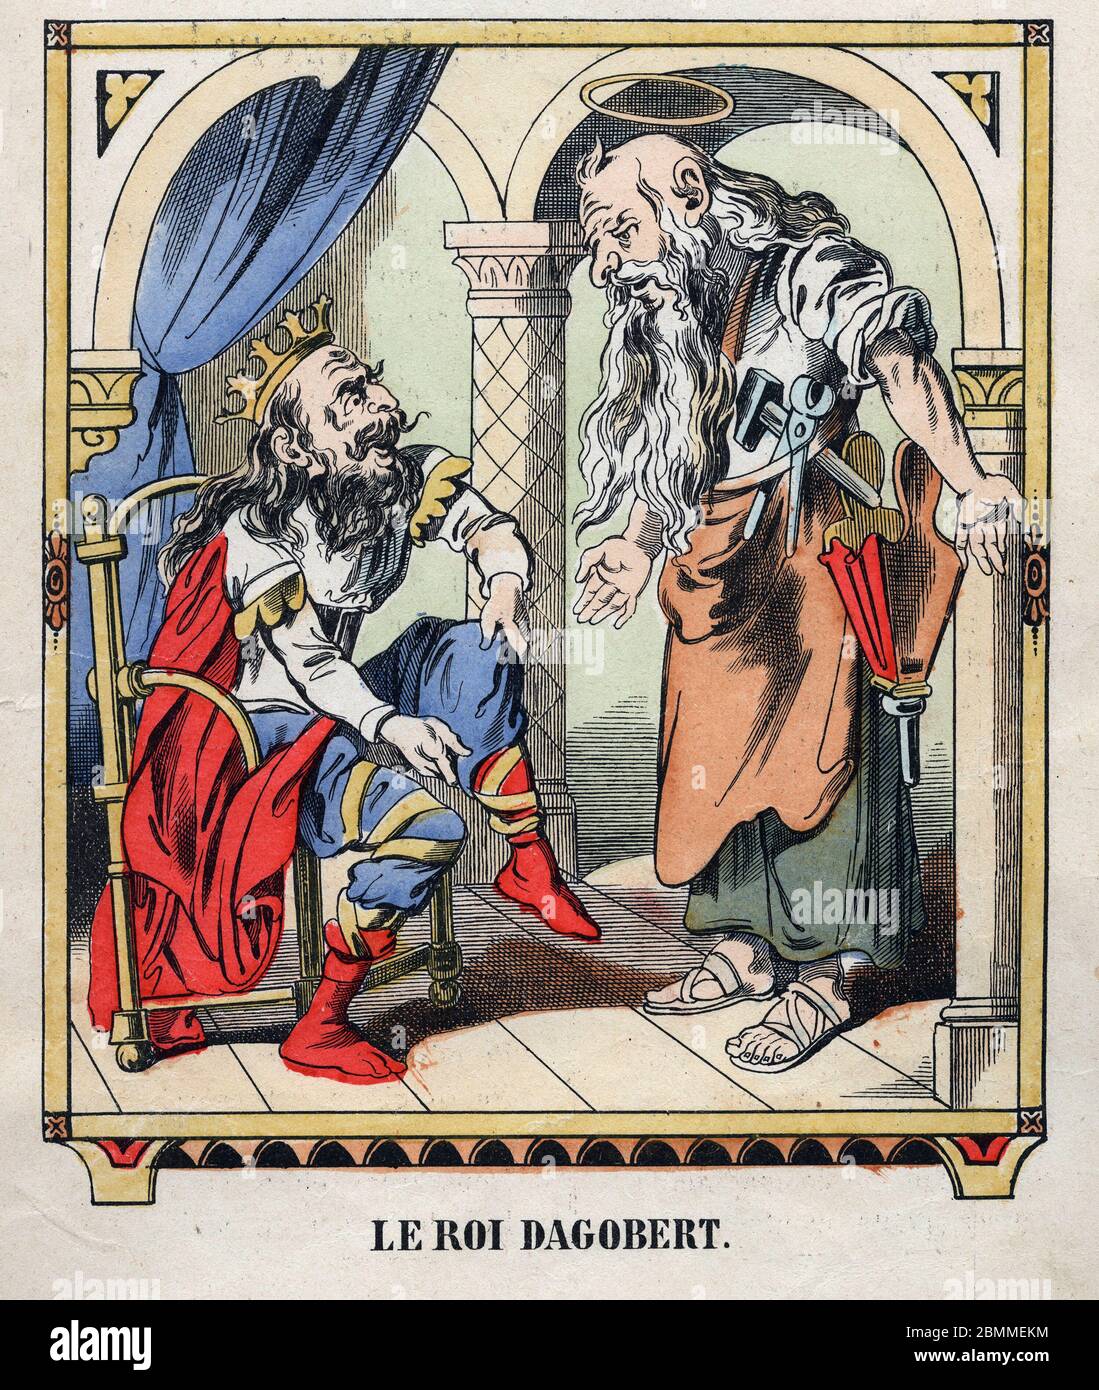 Illustration Anonyme de la chanson populaire francaise (comptine pour enfant) 'Le roi Dagobert' representant le roi Dagobert Ier et saint Eloi de Noyo Stockfoto